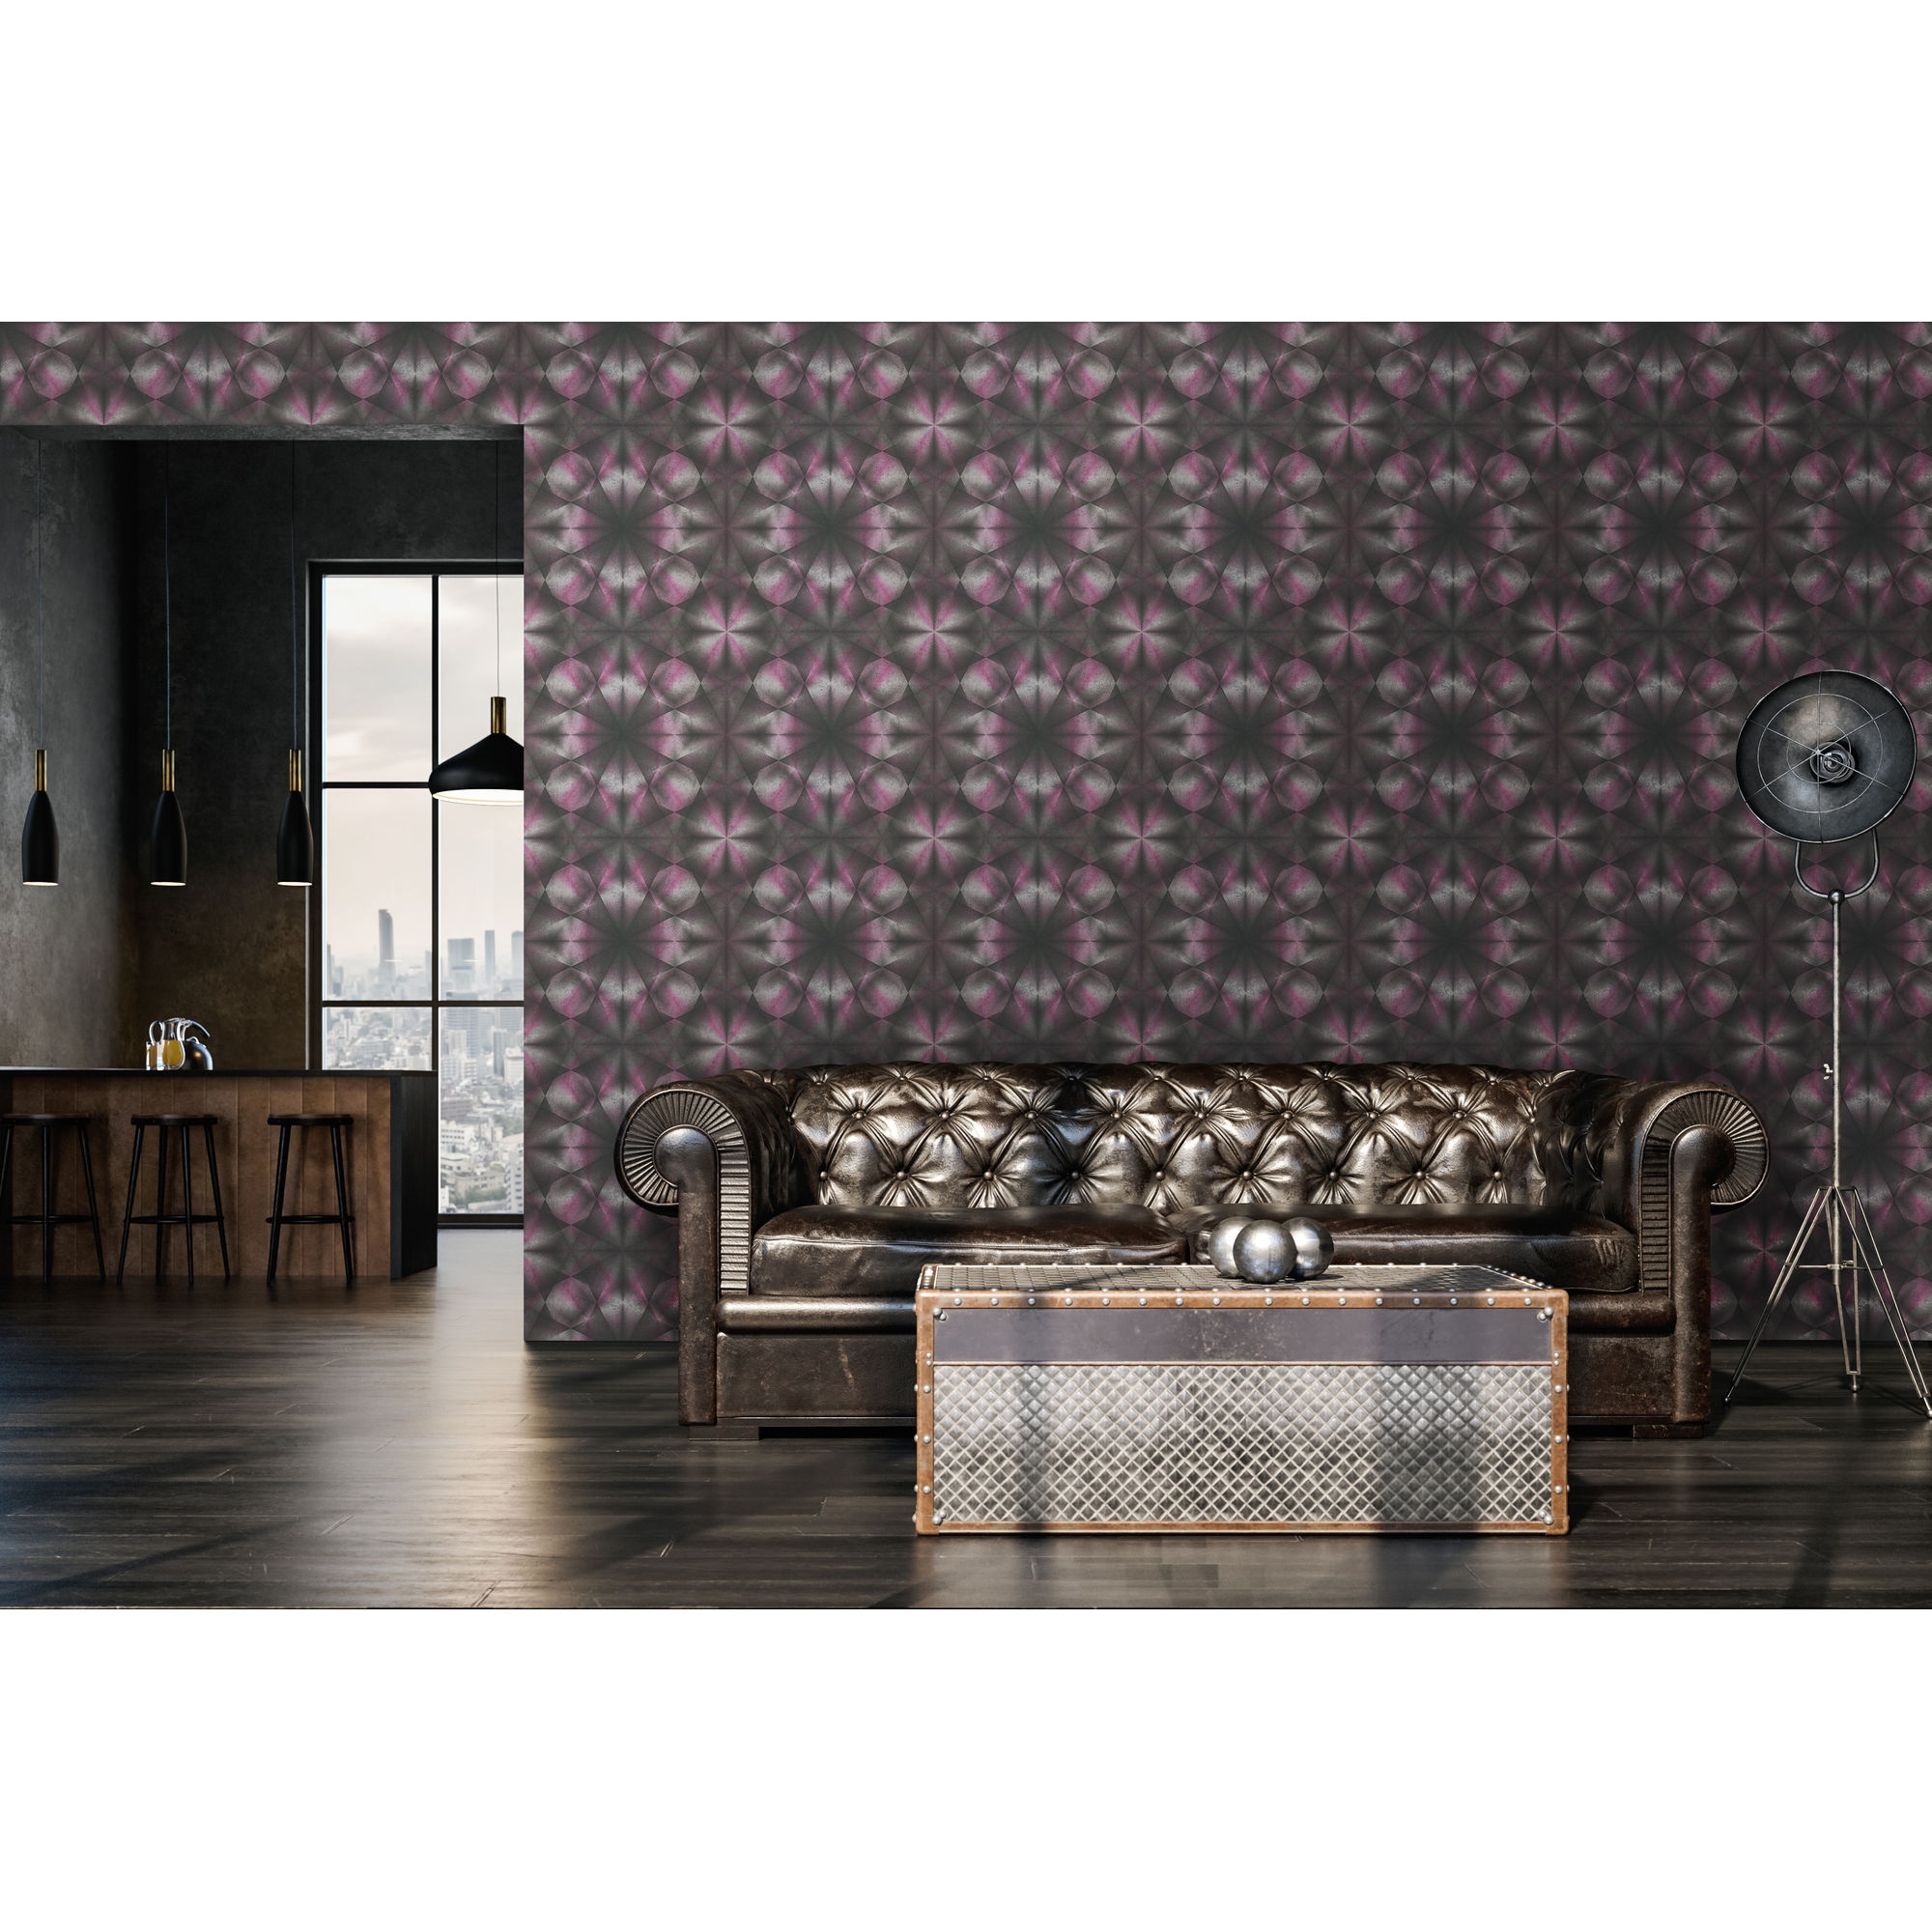 Vliestapete 'My Home. My Spa.' Grafik Beton 3D schwarz/lila 10,05 x 0,53 m + product picture